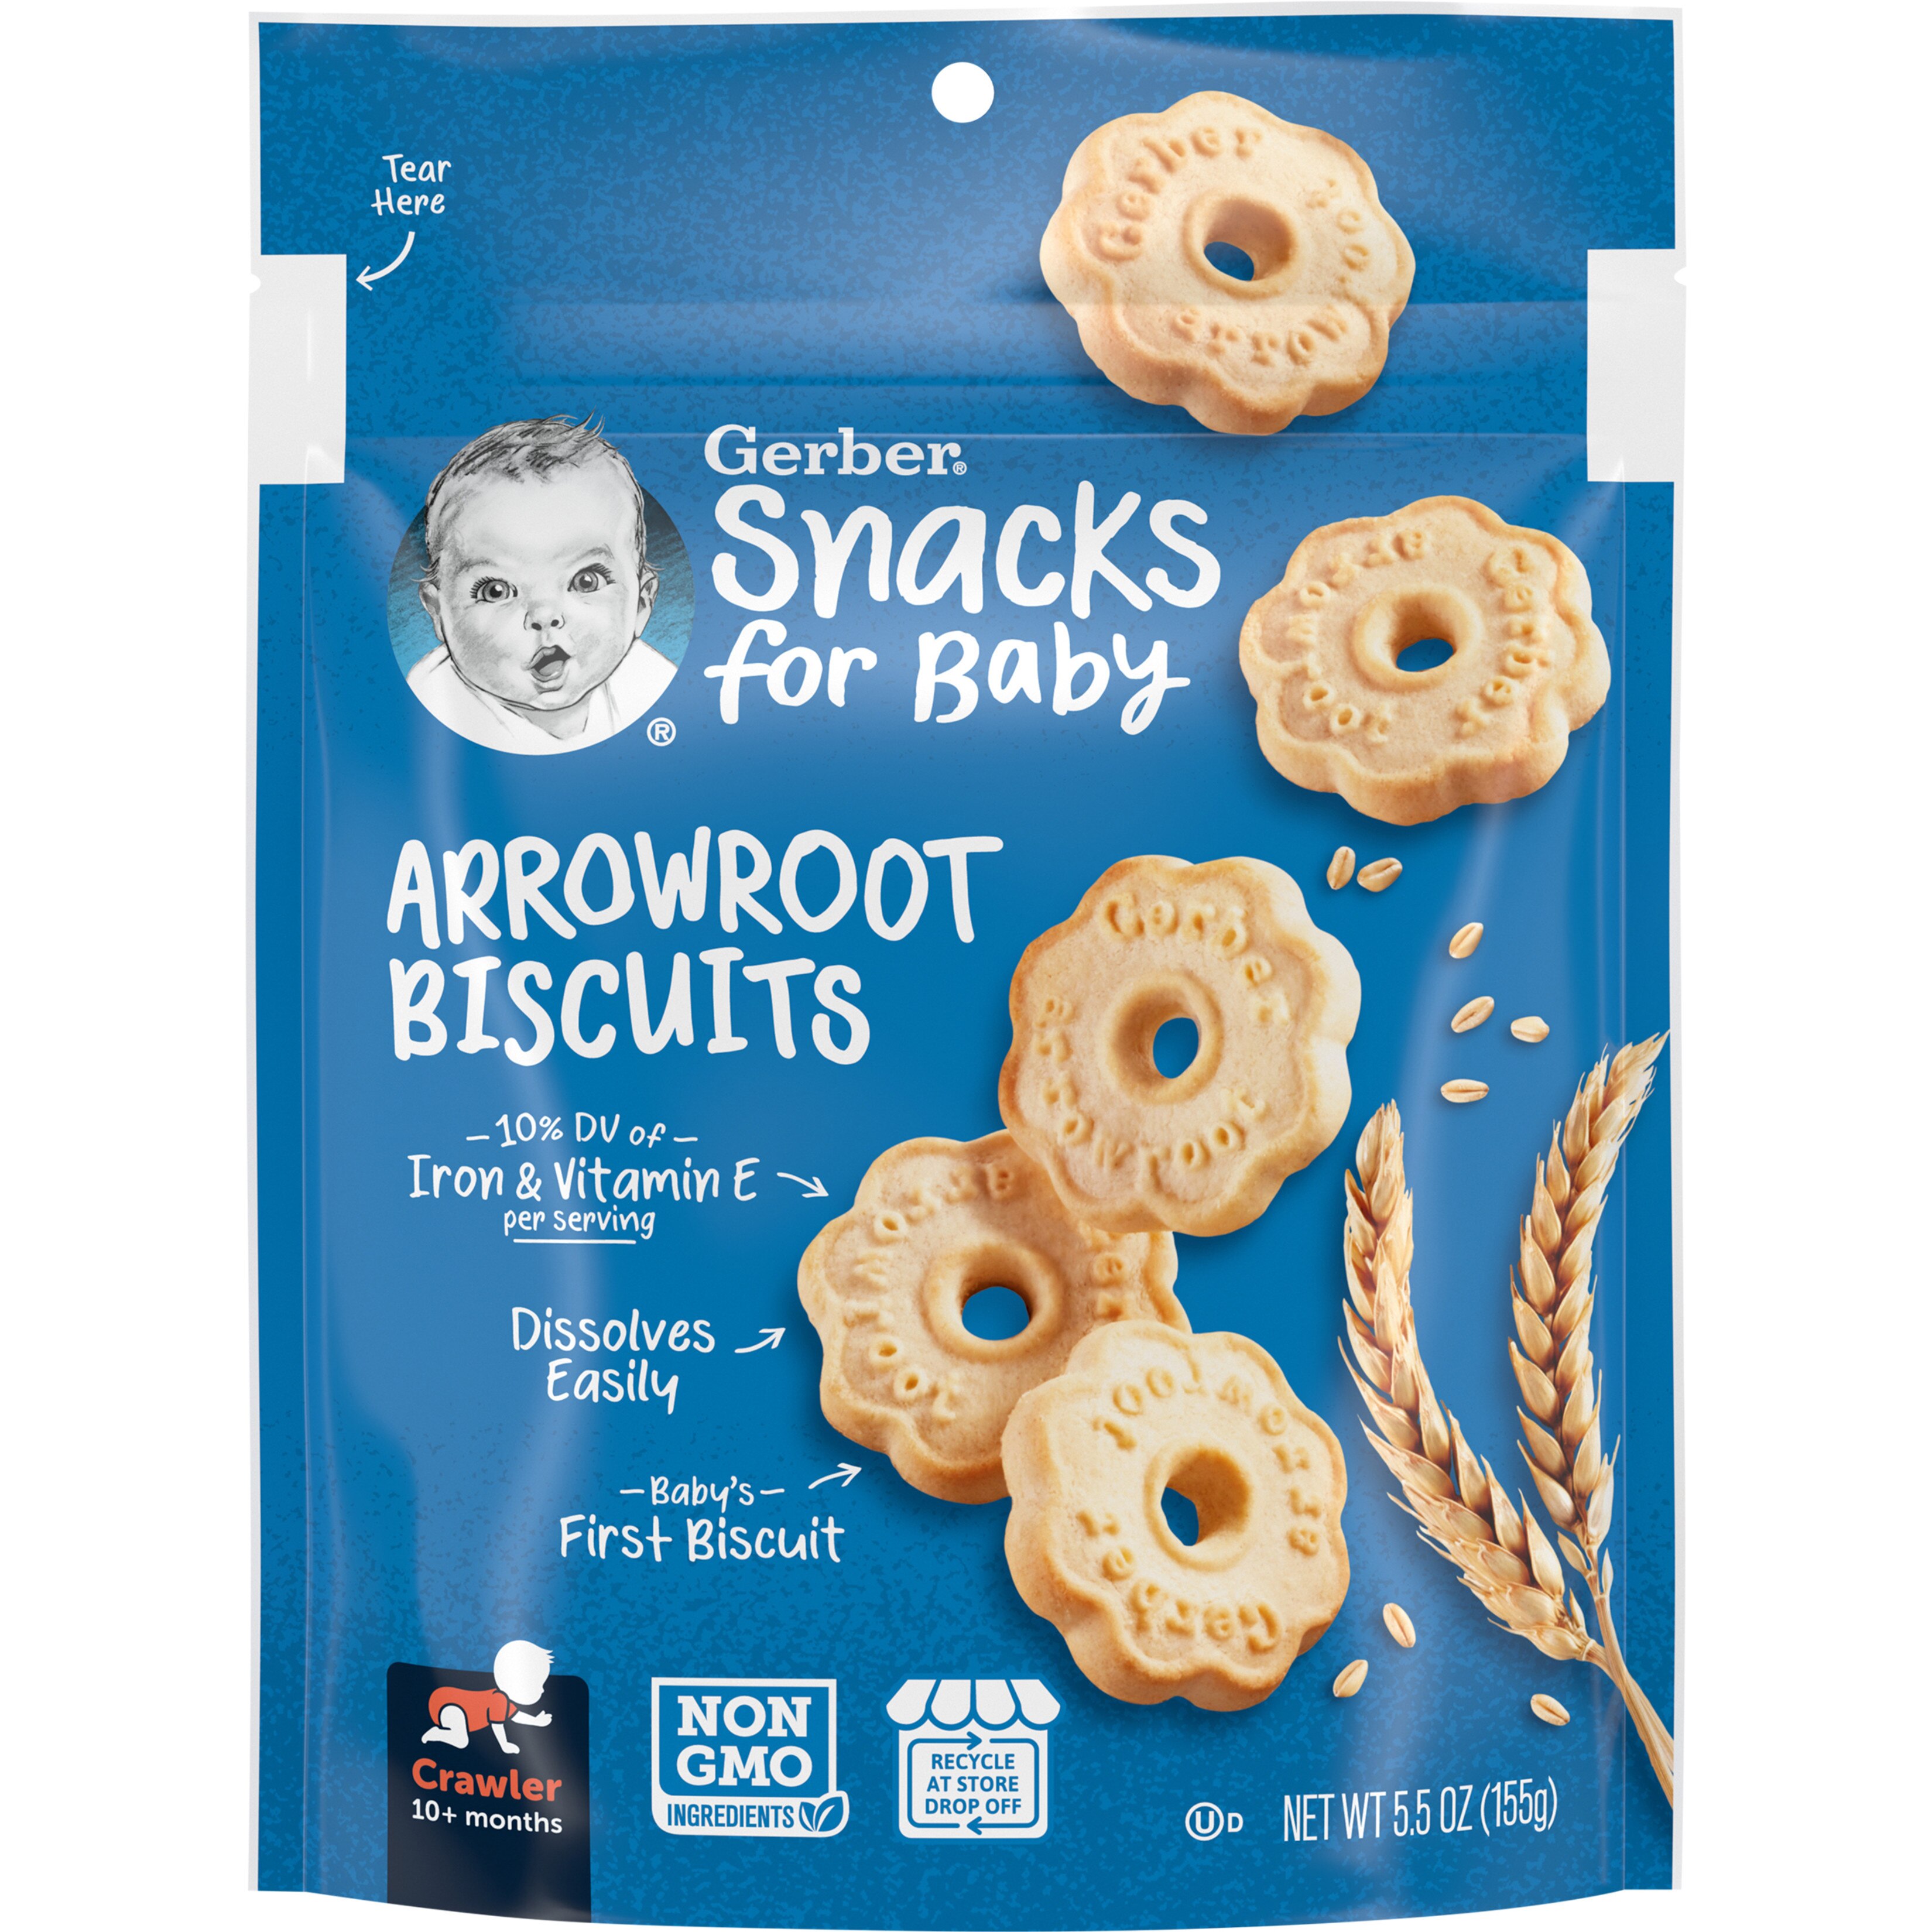 Gerber Snacks for Baby Arrowroot Biscuits, 5.5 OZ